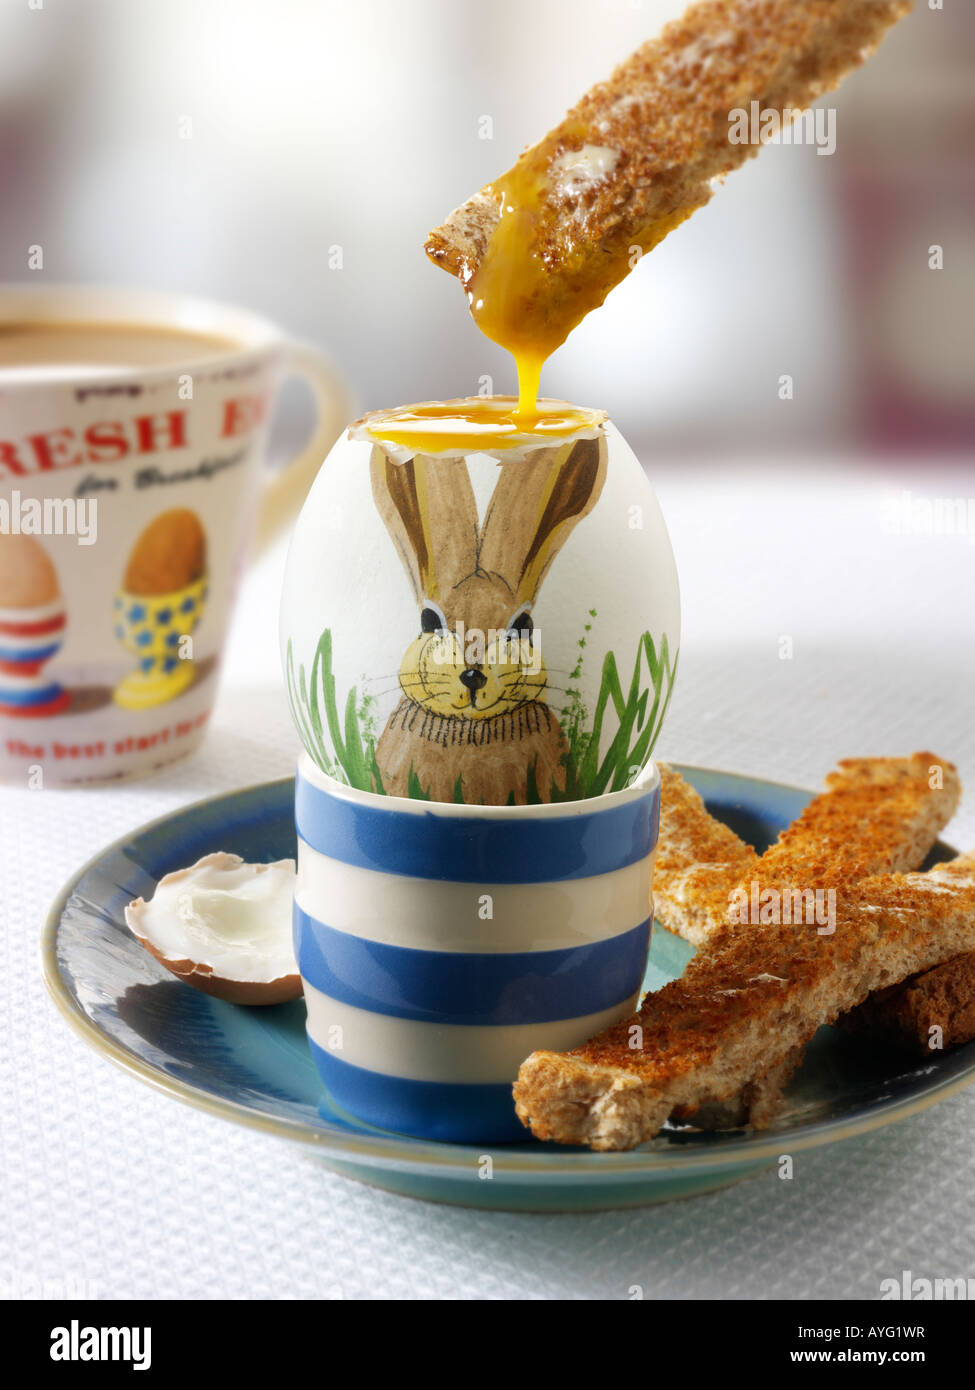 Tradizionale dipinto a mano decorate bollite il coniglio di pasqua uovo in una sala colazione con pane tostato essendo immerso nell'uovo Foto Stock